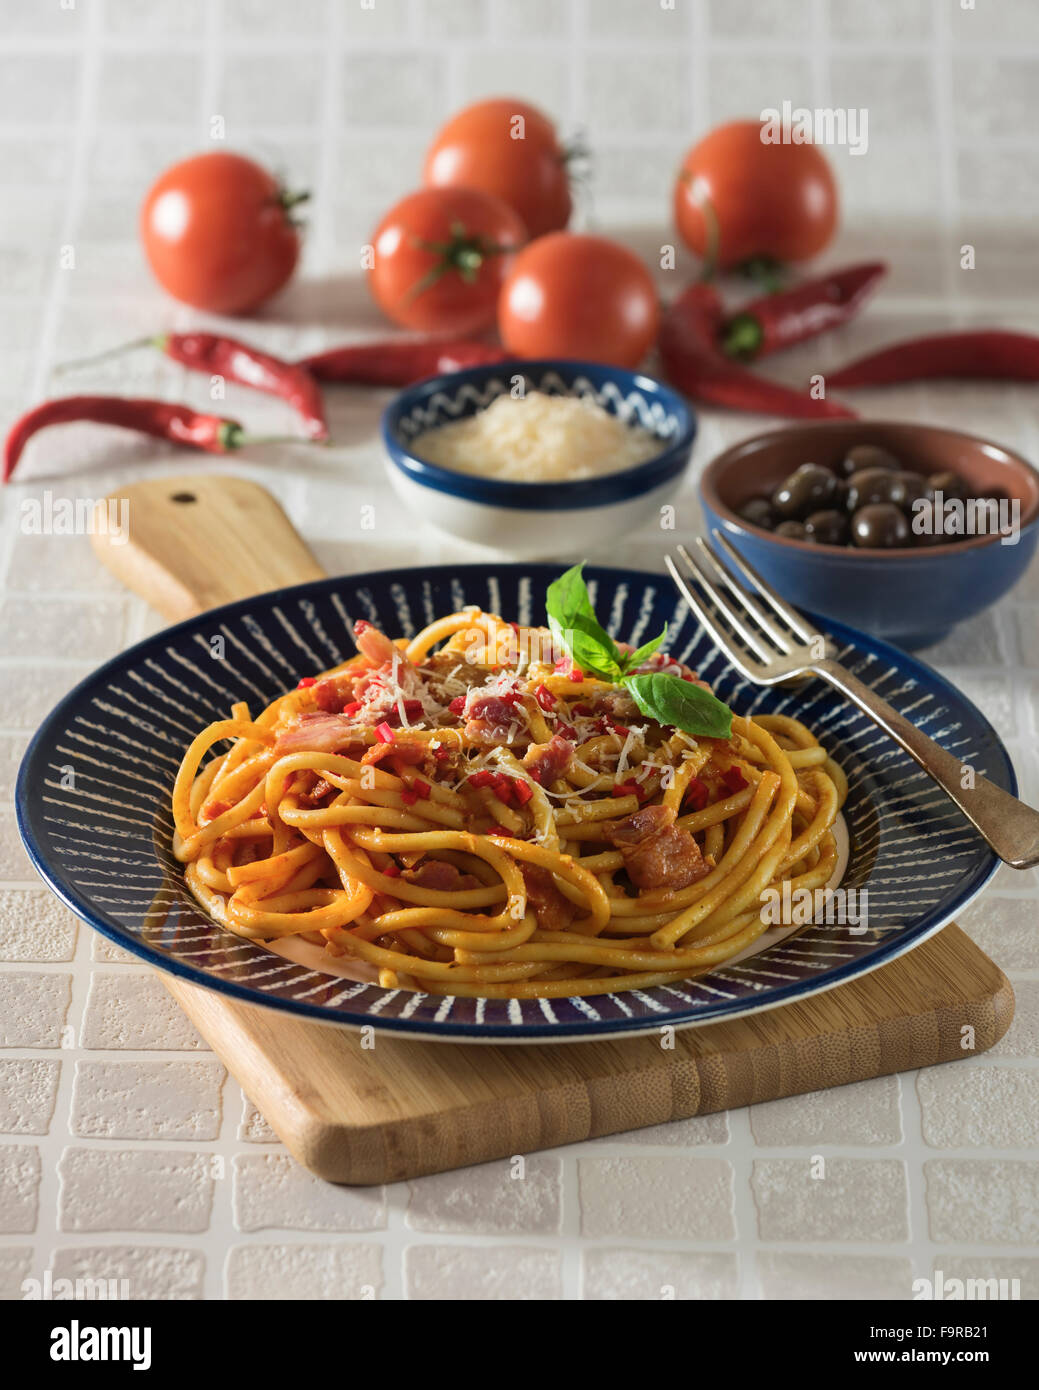 Bucatini all'amatriciana.Pasta with bacon and tomato sauce. Italian food. Stock Photo